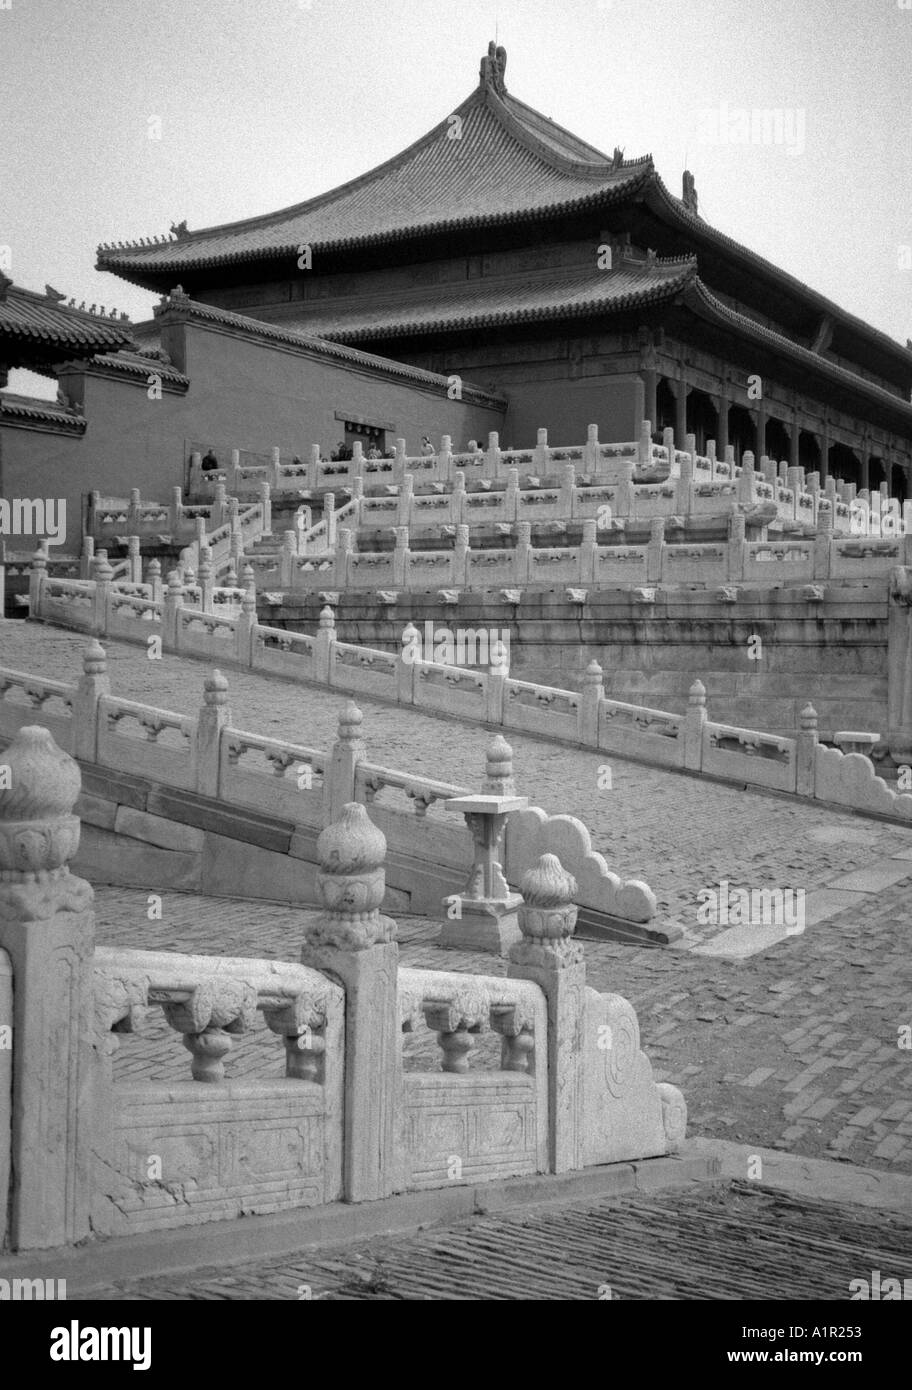 Ciudad Prohibida Imperial Palace Sitio de Patrimonio Mundial de la UNESCO en Beijing Pekín China Asia Asia asiáticos Foto de stock